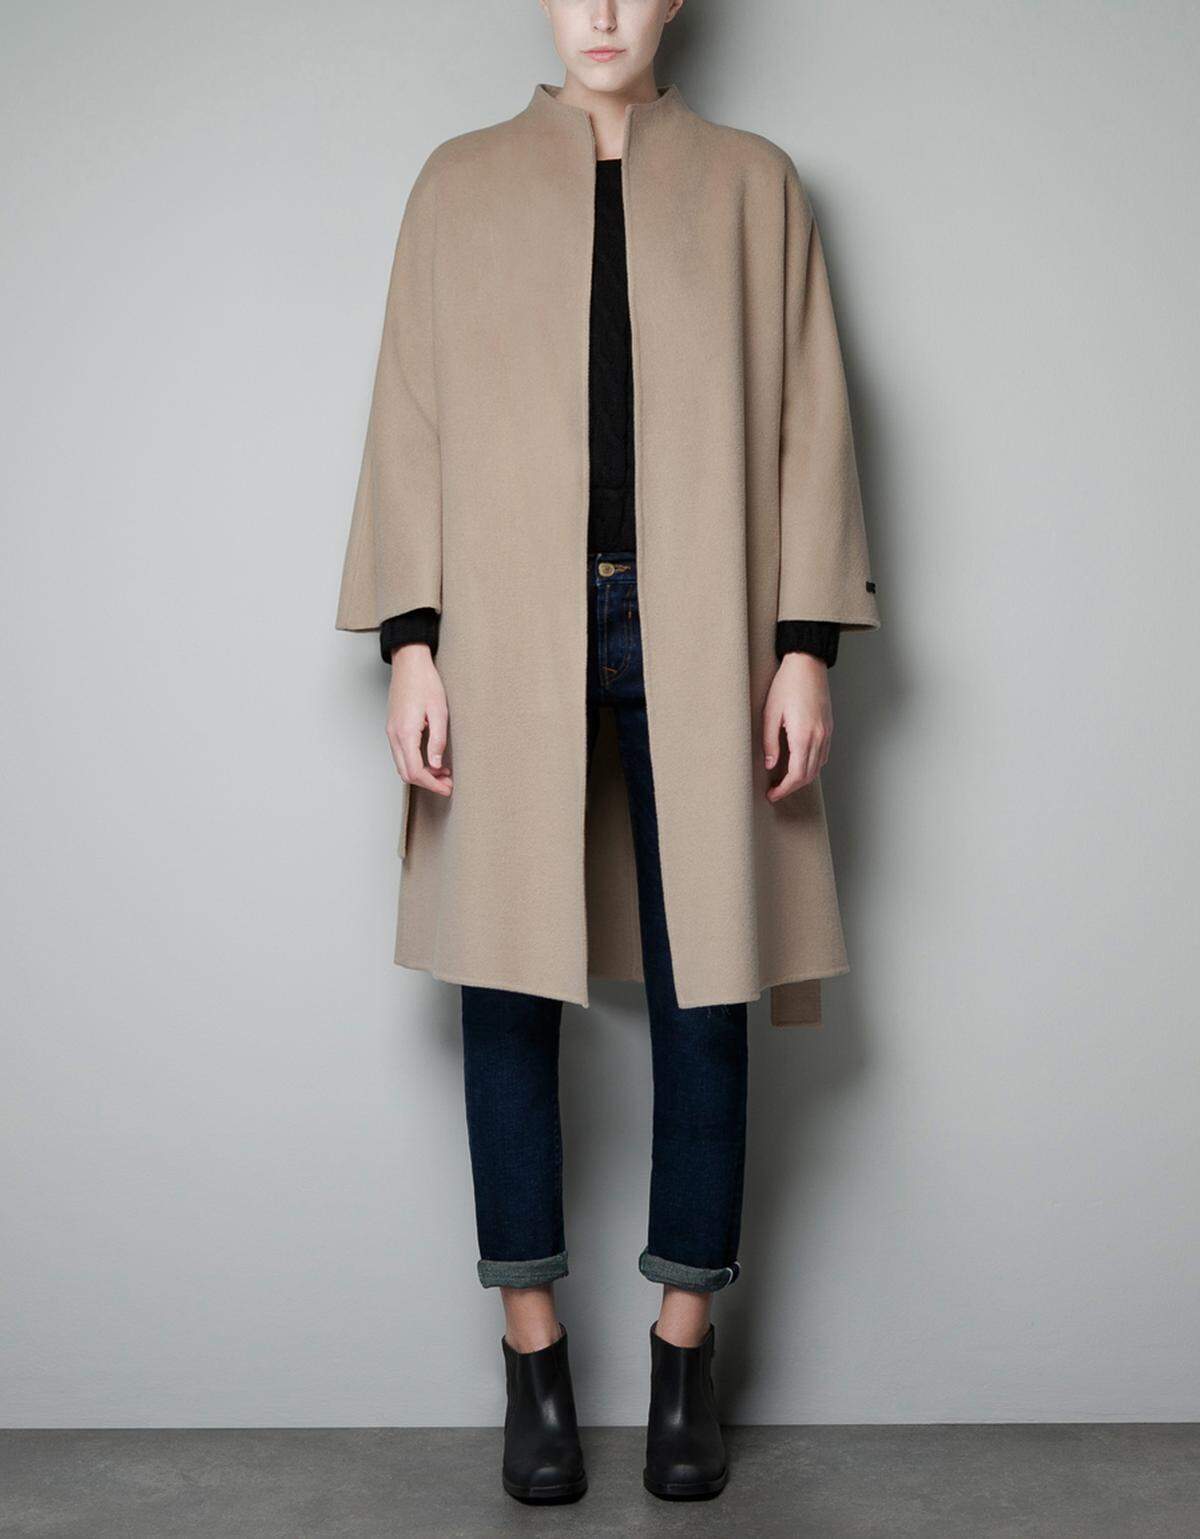 Zart und akkurat ist auch dieser Mantel von Zara.